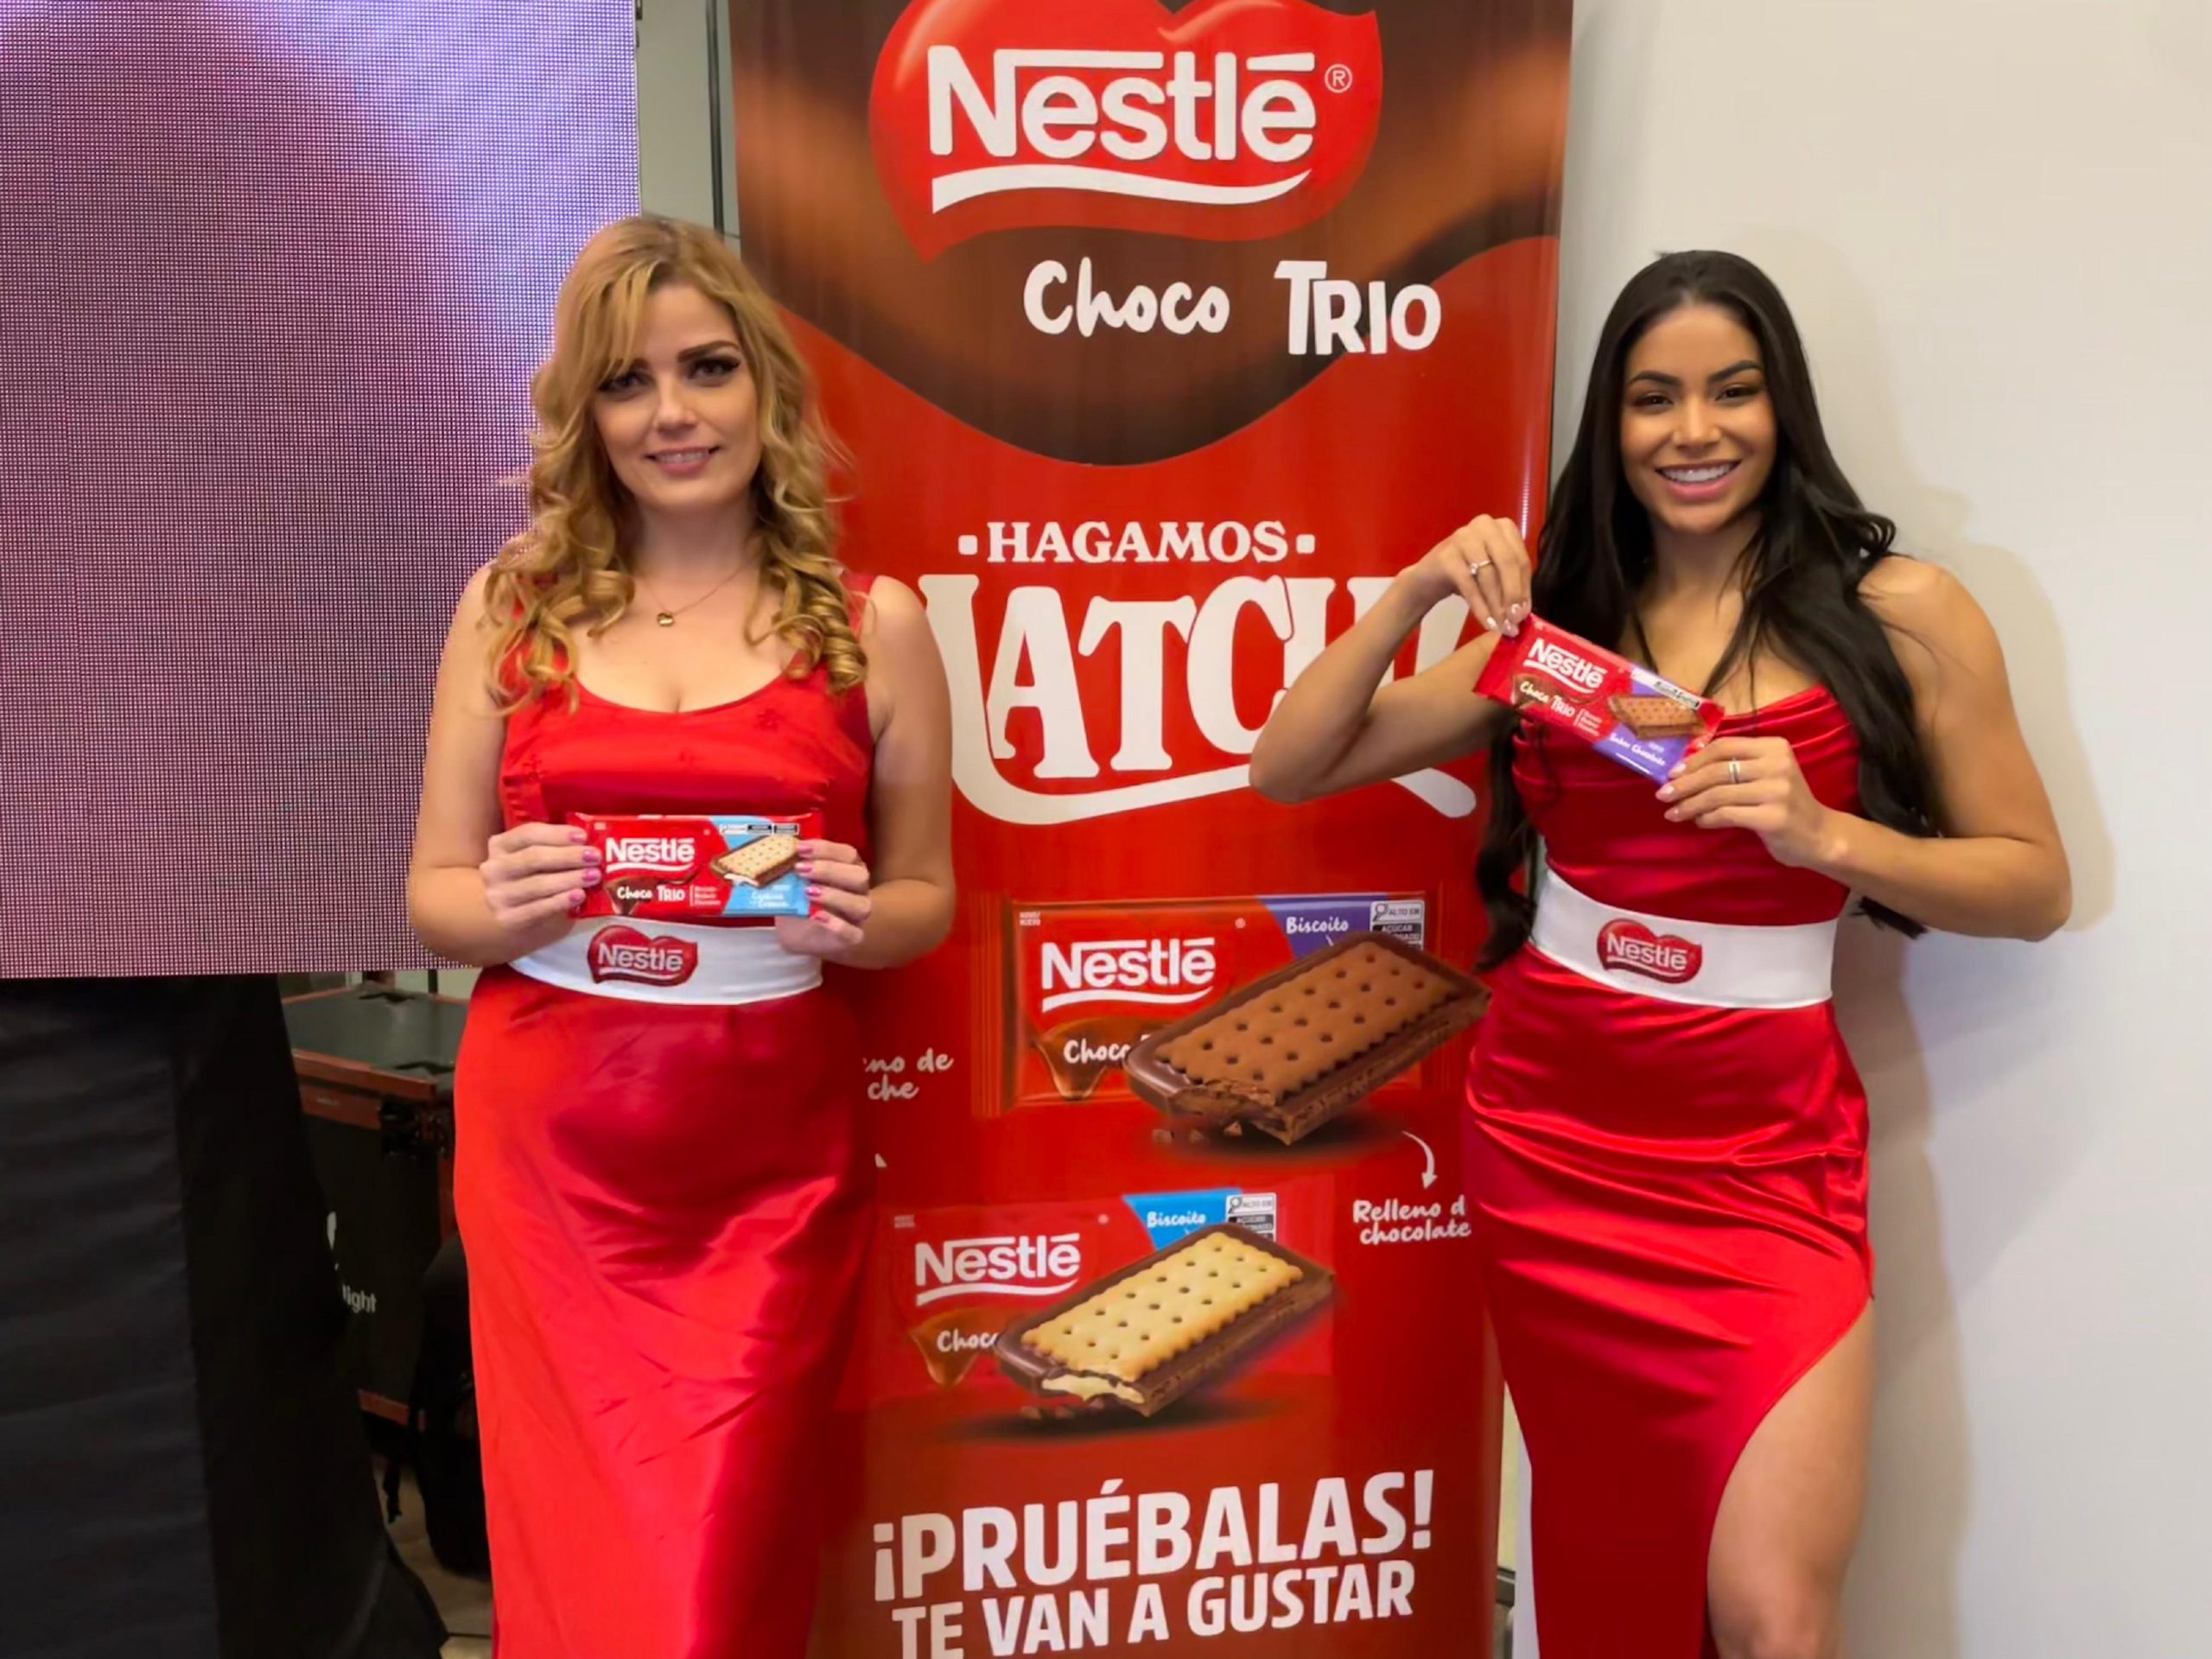 Choco TRIO: Nestlé Presenta la Única Tableta que Combina Chocolate con Galleta y Relleno